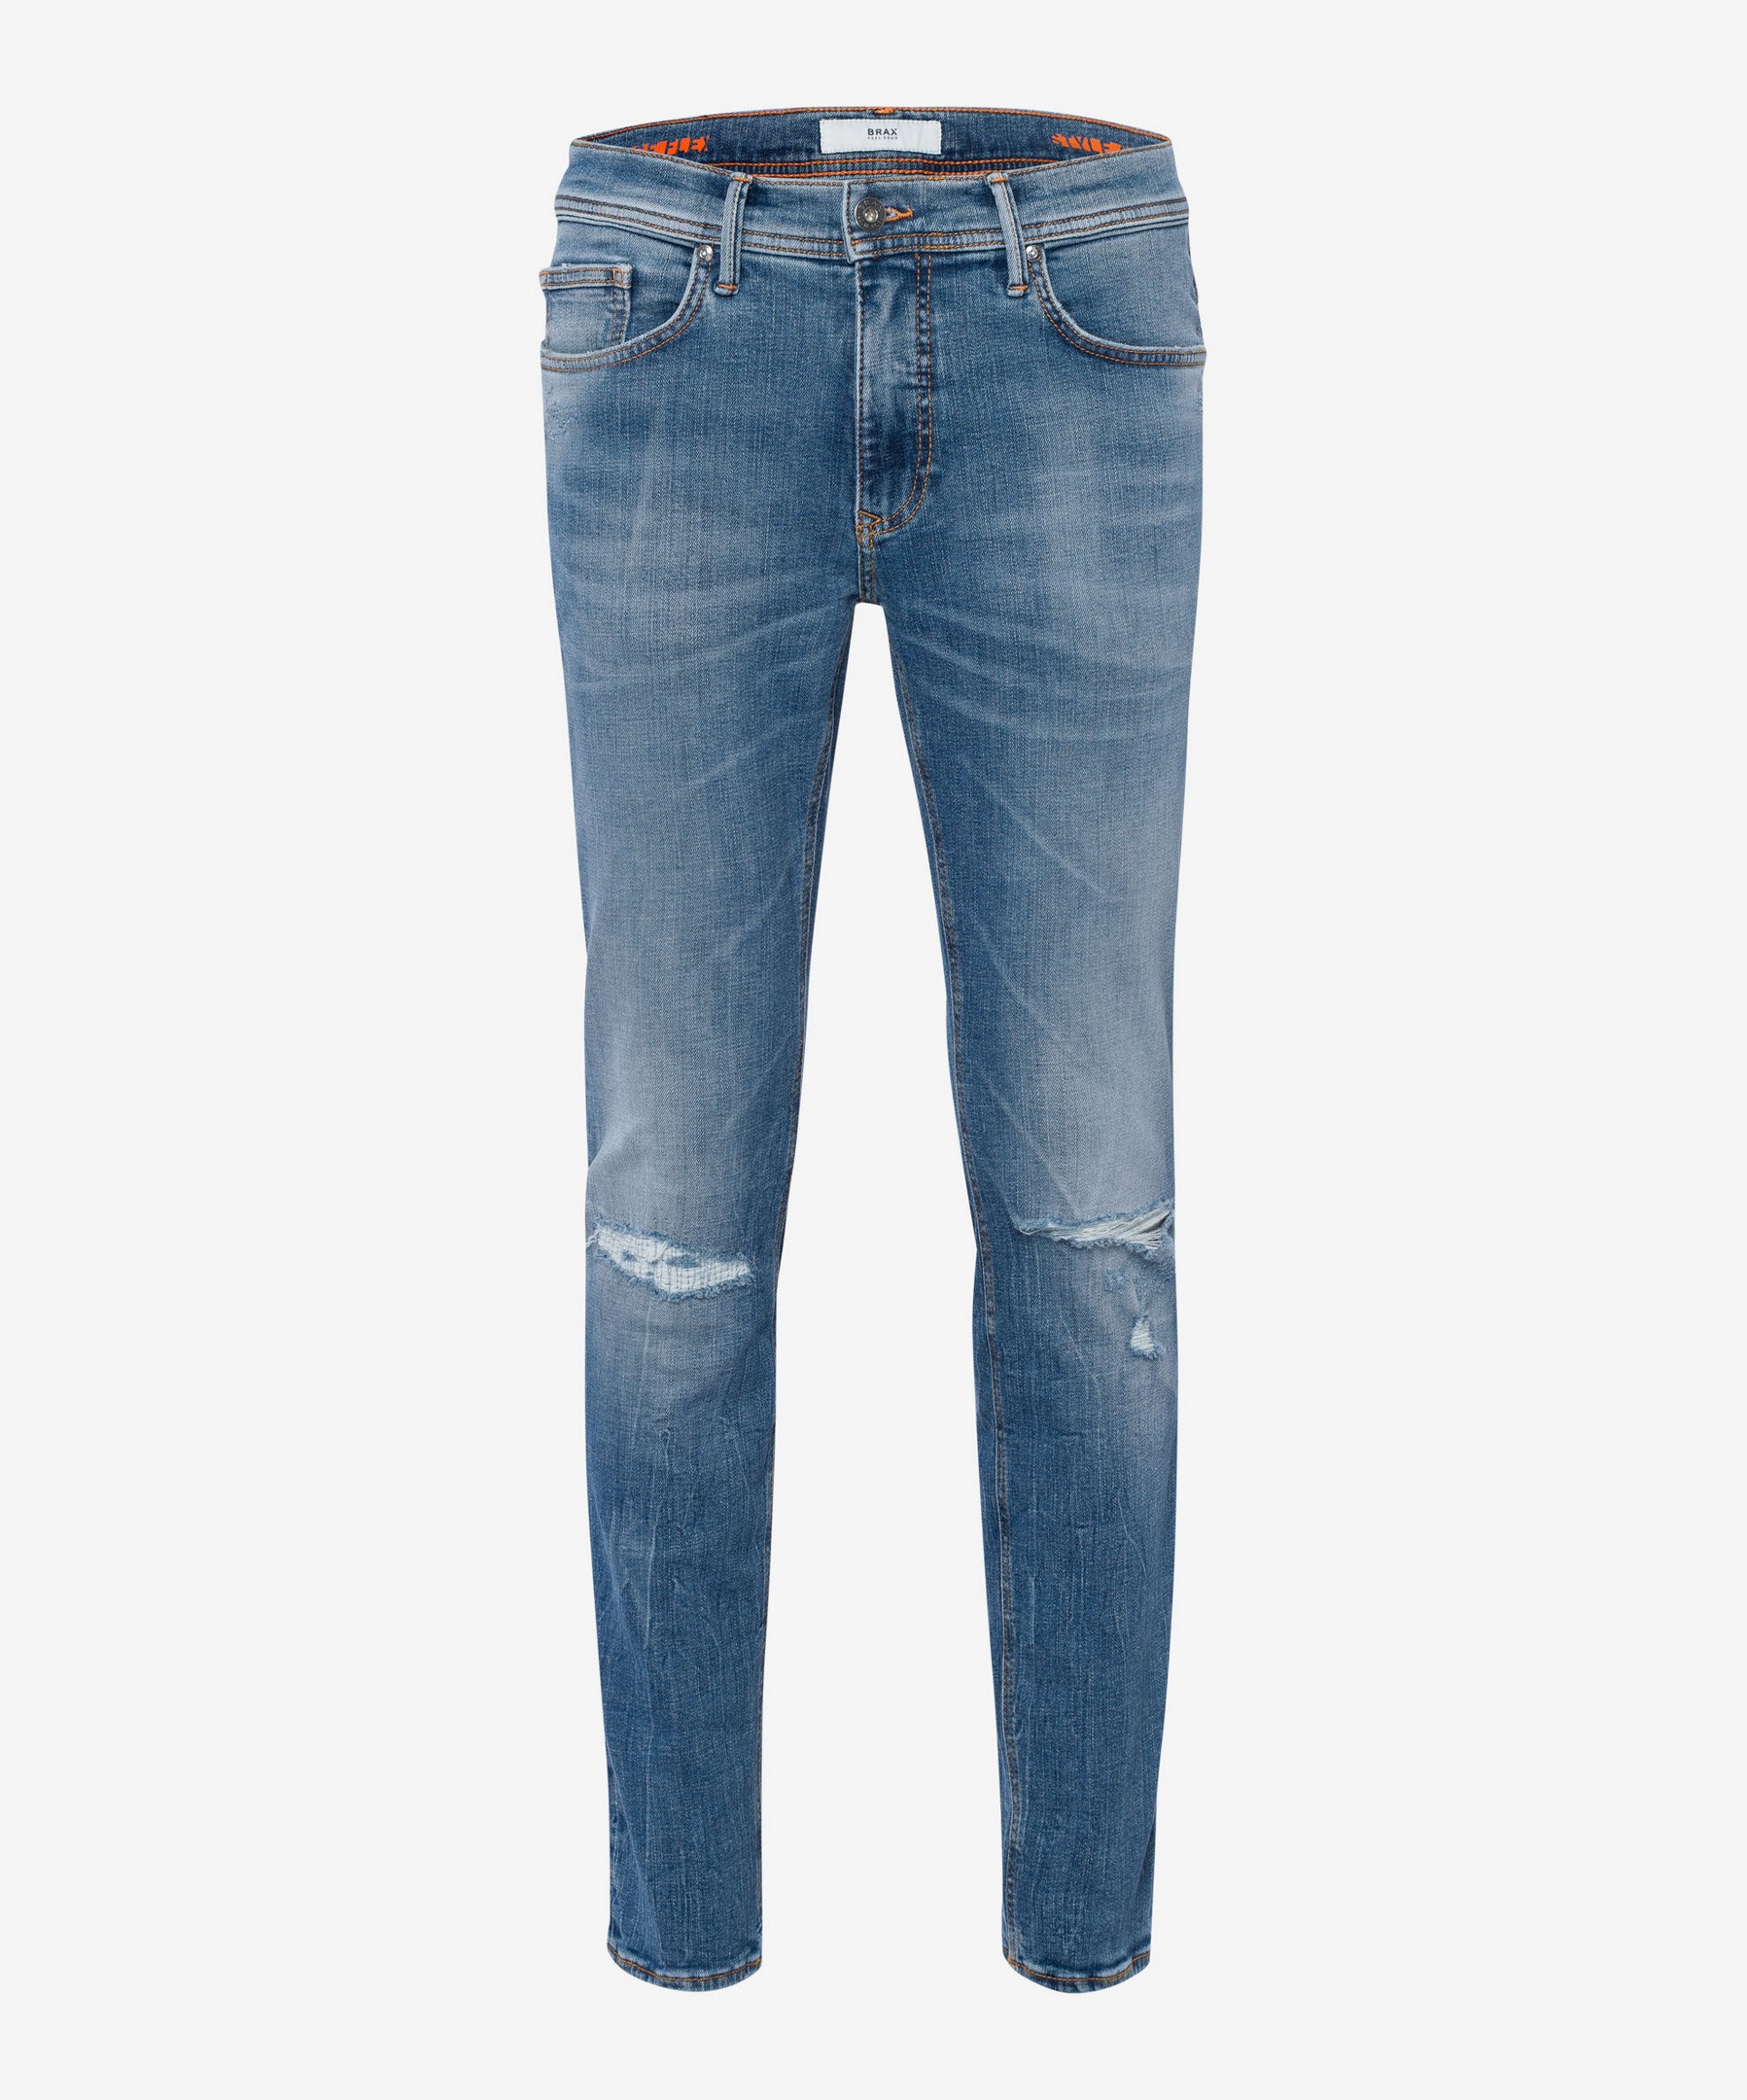 Brax Chris 5-Pocket Vintage Denim Hi-Flex Superstretch Blue Planet Jeans  Blue Indigo Destroyed | Jan Rozing Men\'s Fashion